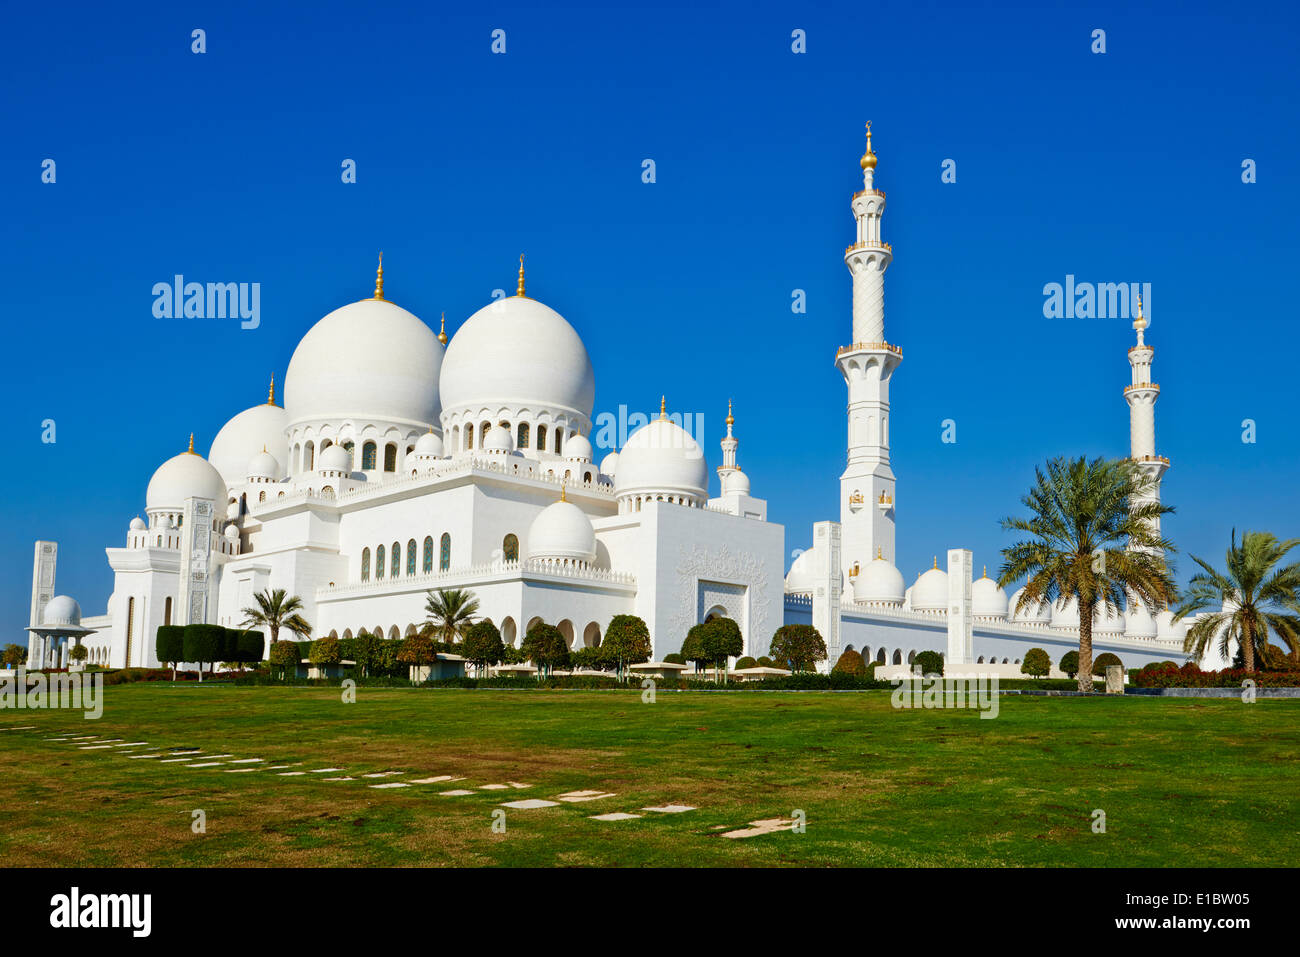 United Arab Emirates, Abu Dhabi, Sheikh Zayed Grand Mosque Stock Photo